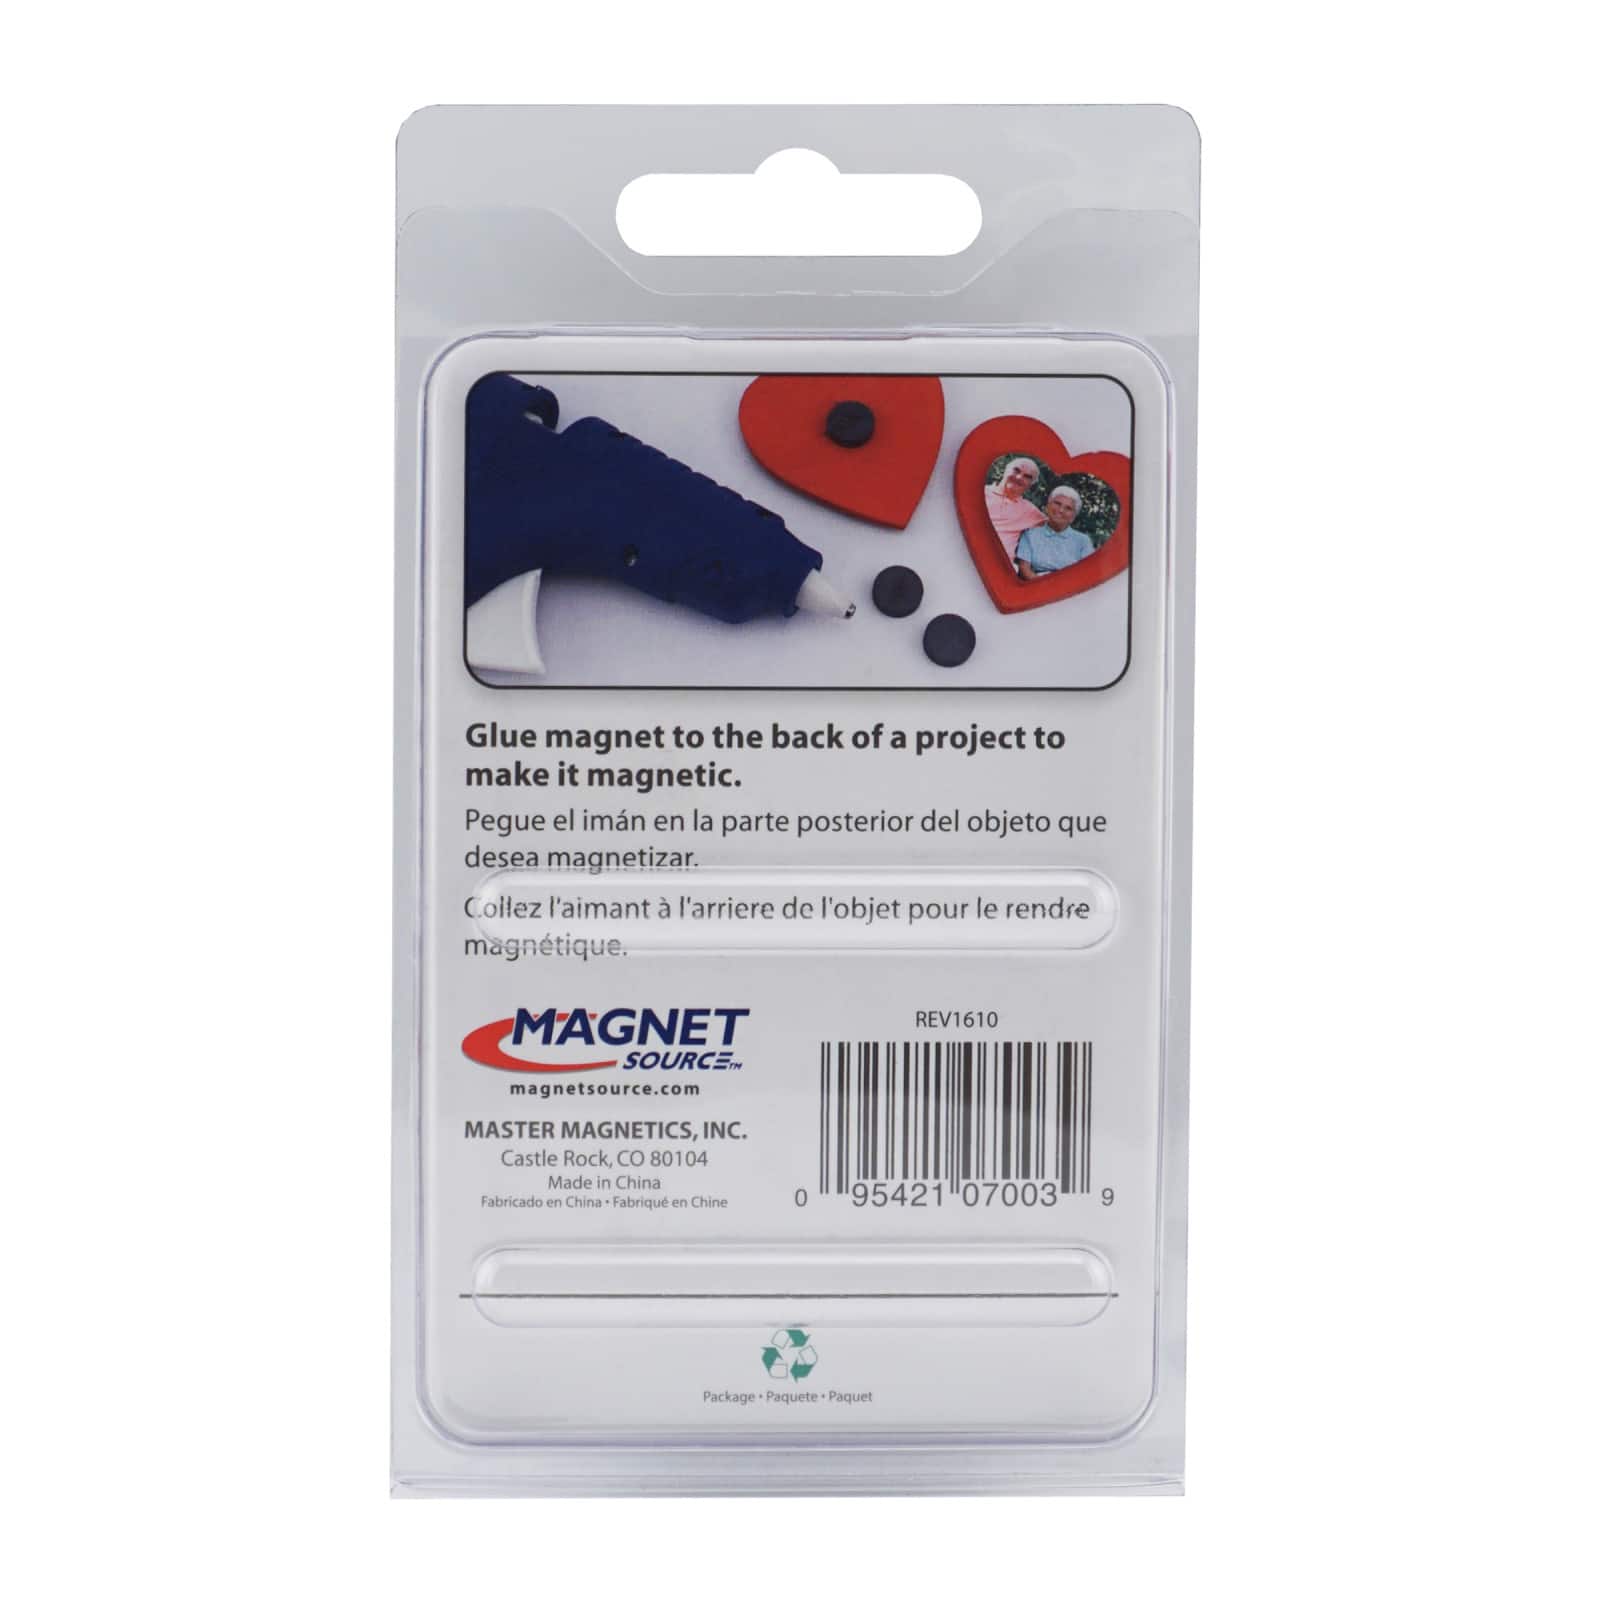 Magnet Source&#x2122; Ceramic Disks Magnets